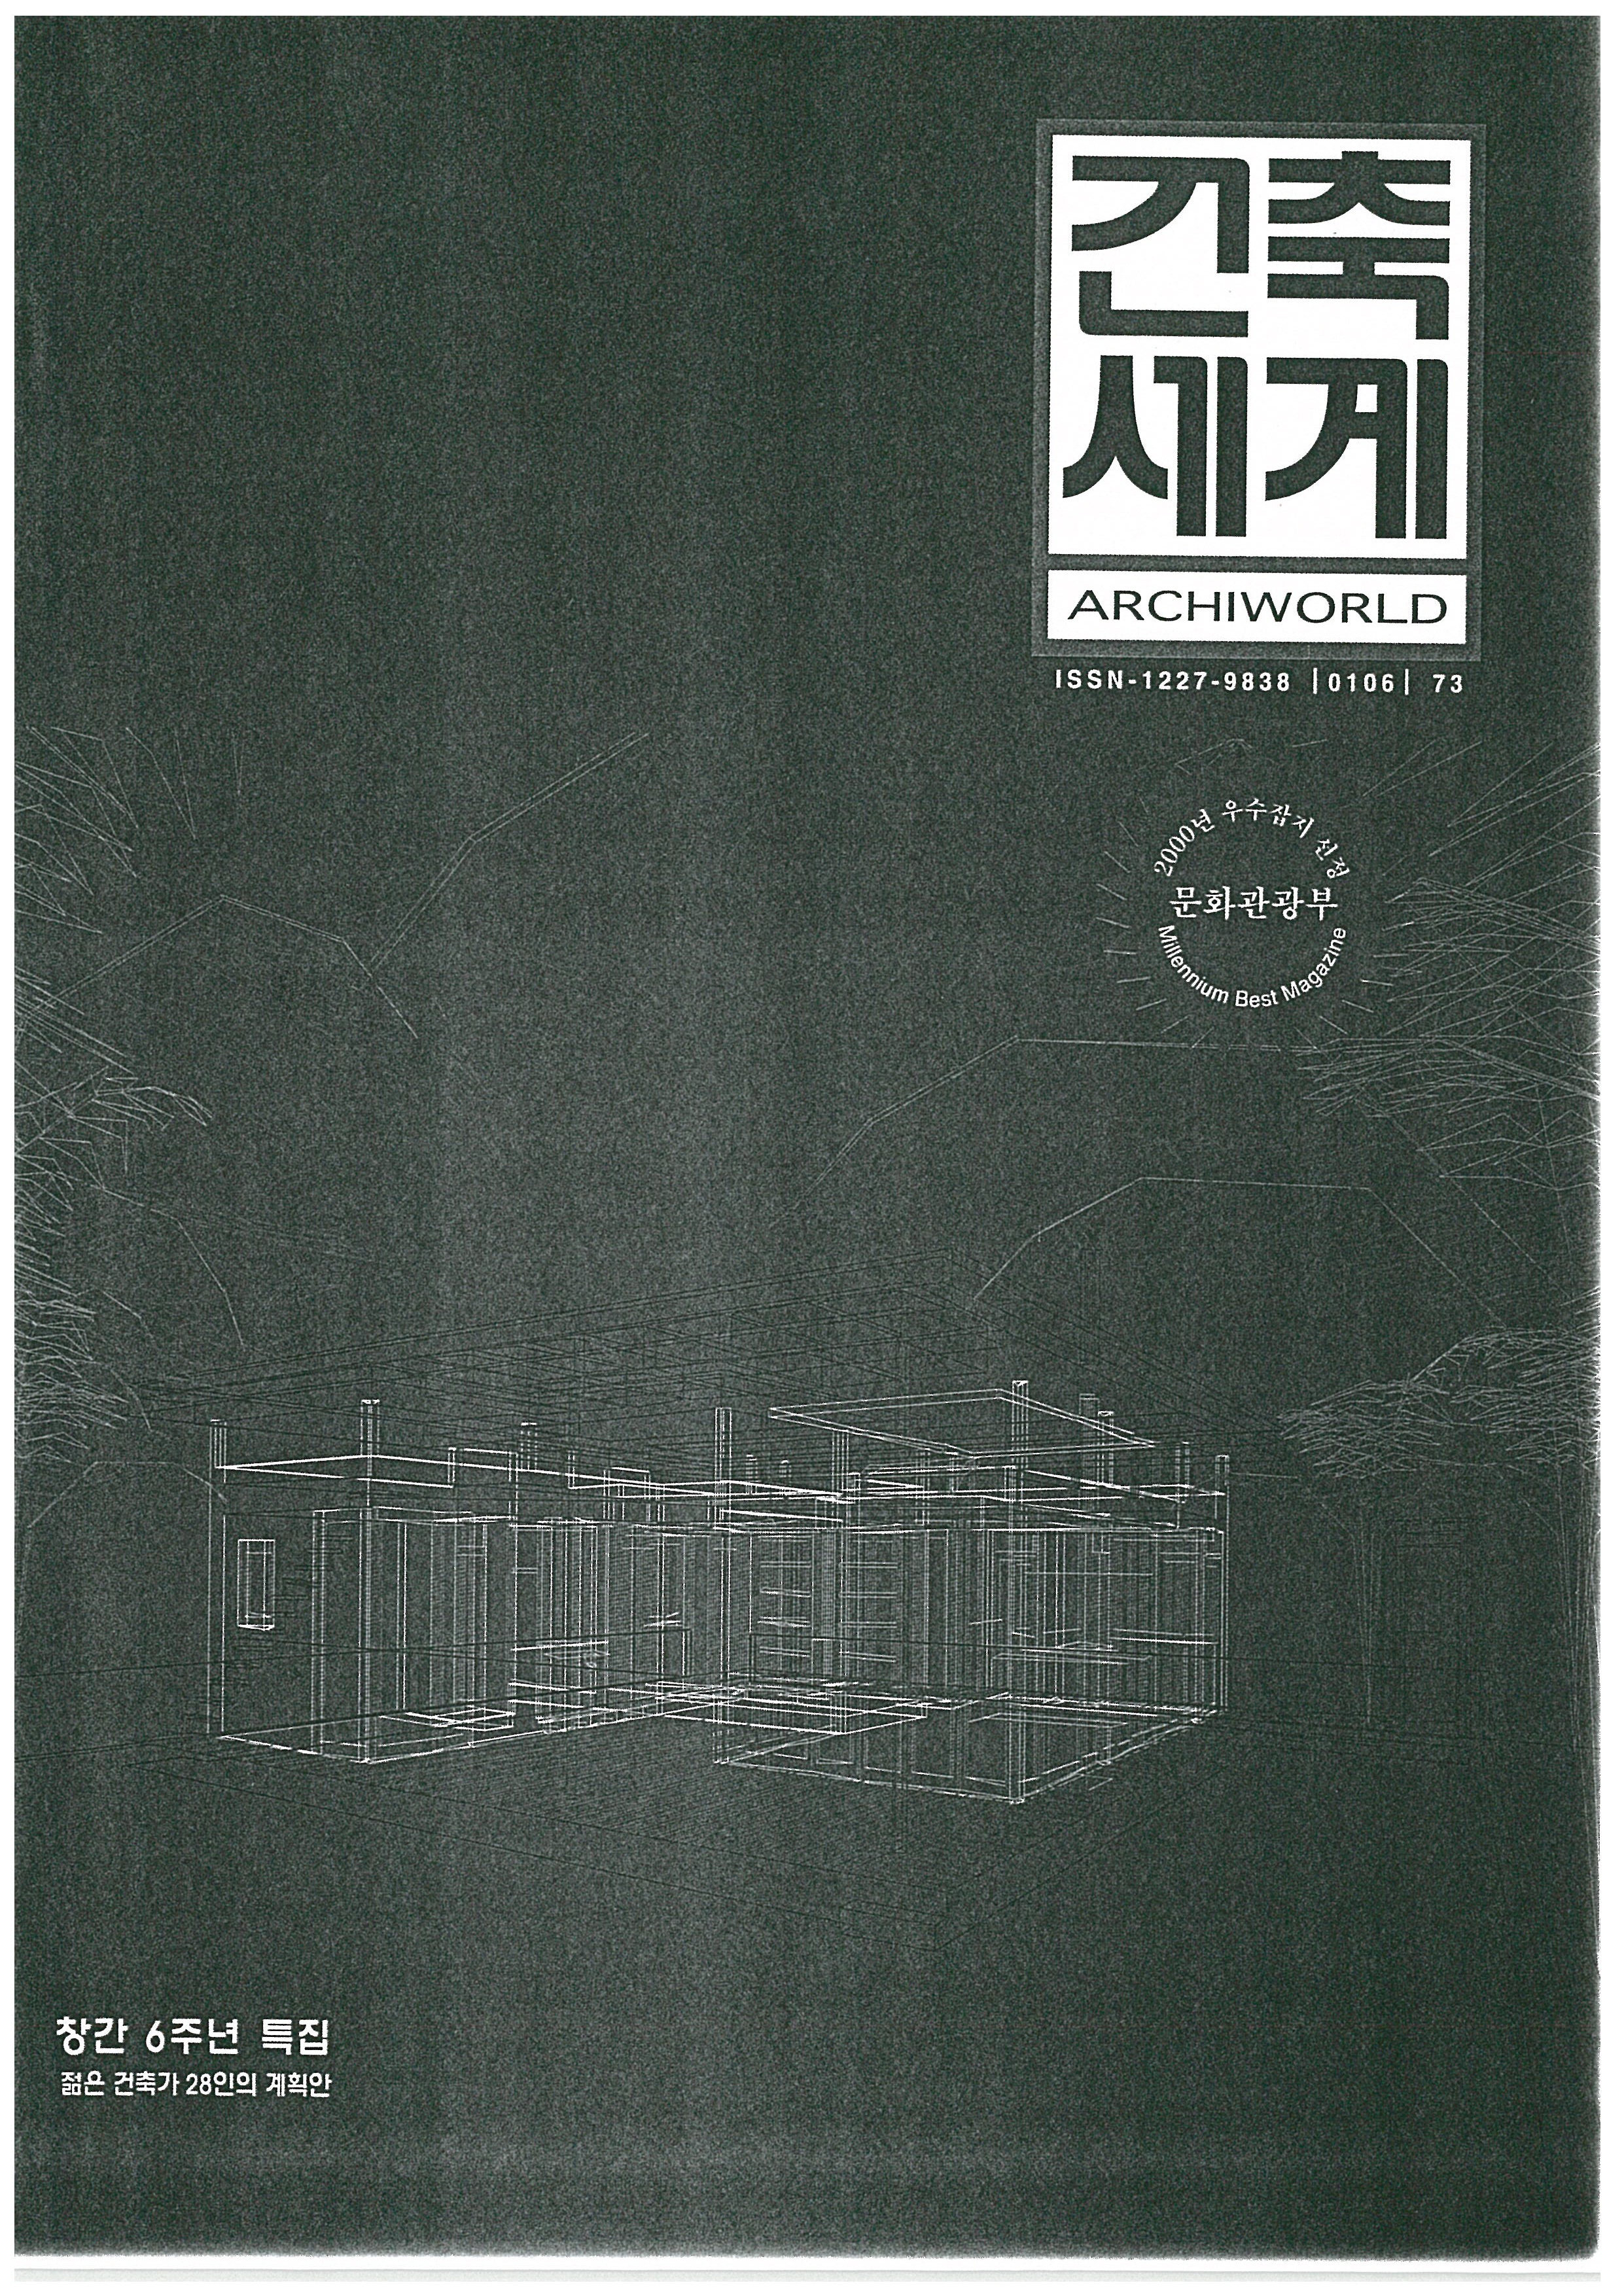  「60년대 이응노 꼴라주전 2차 전시」, 『건축세계』 